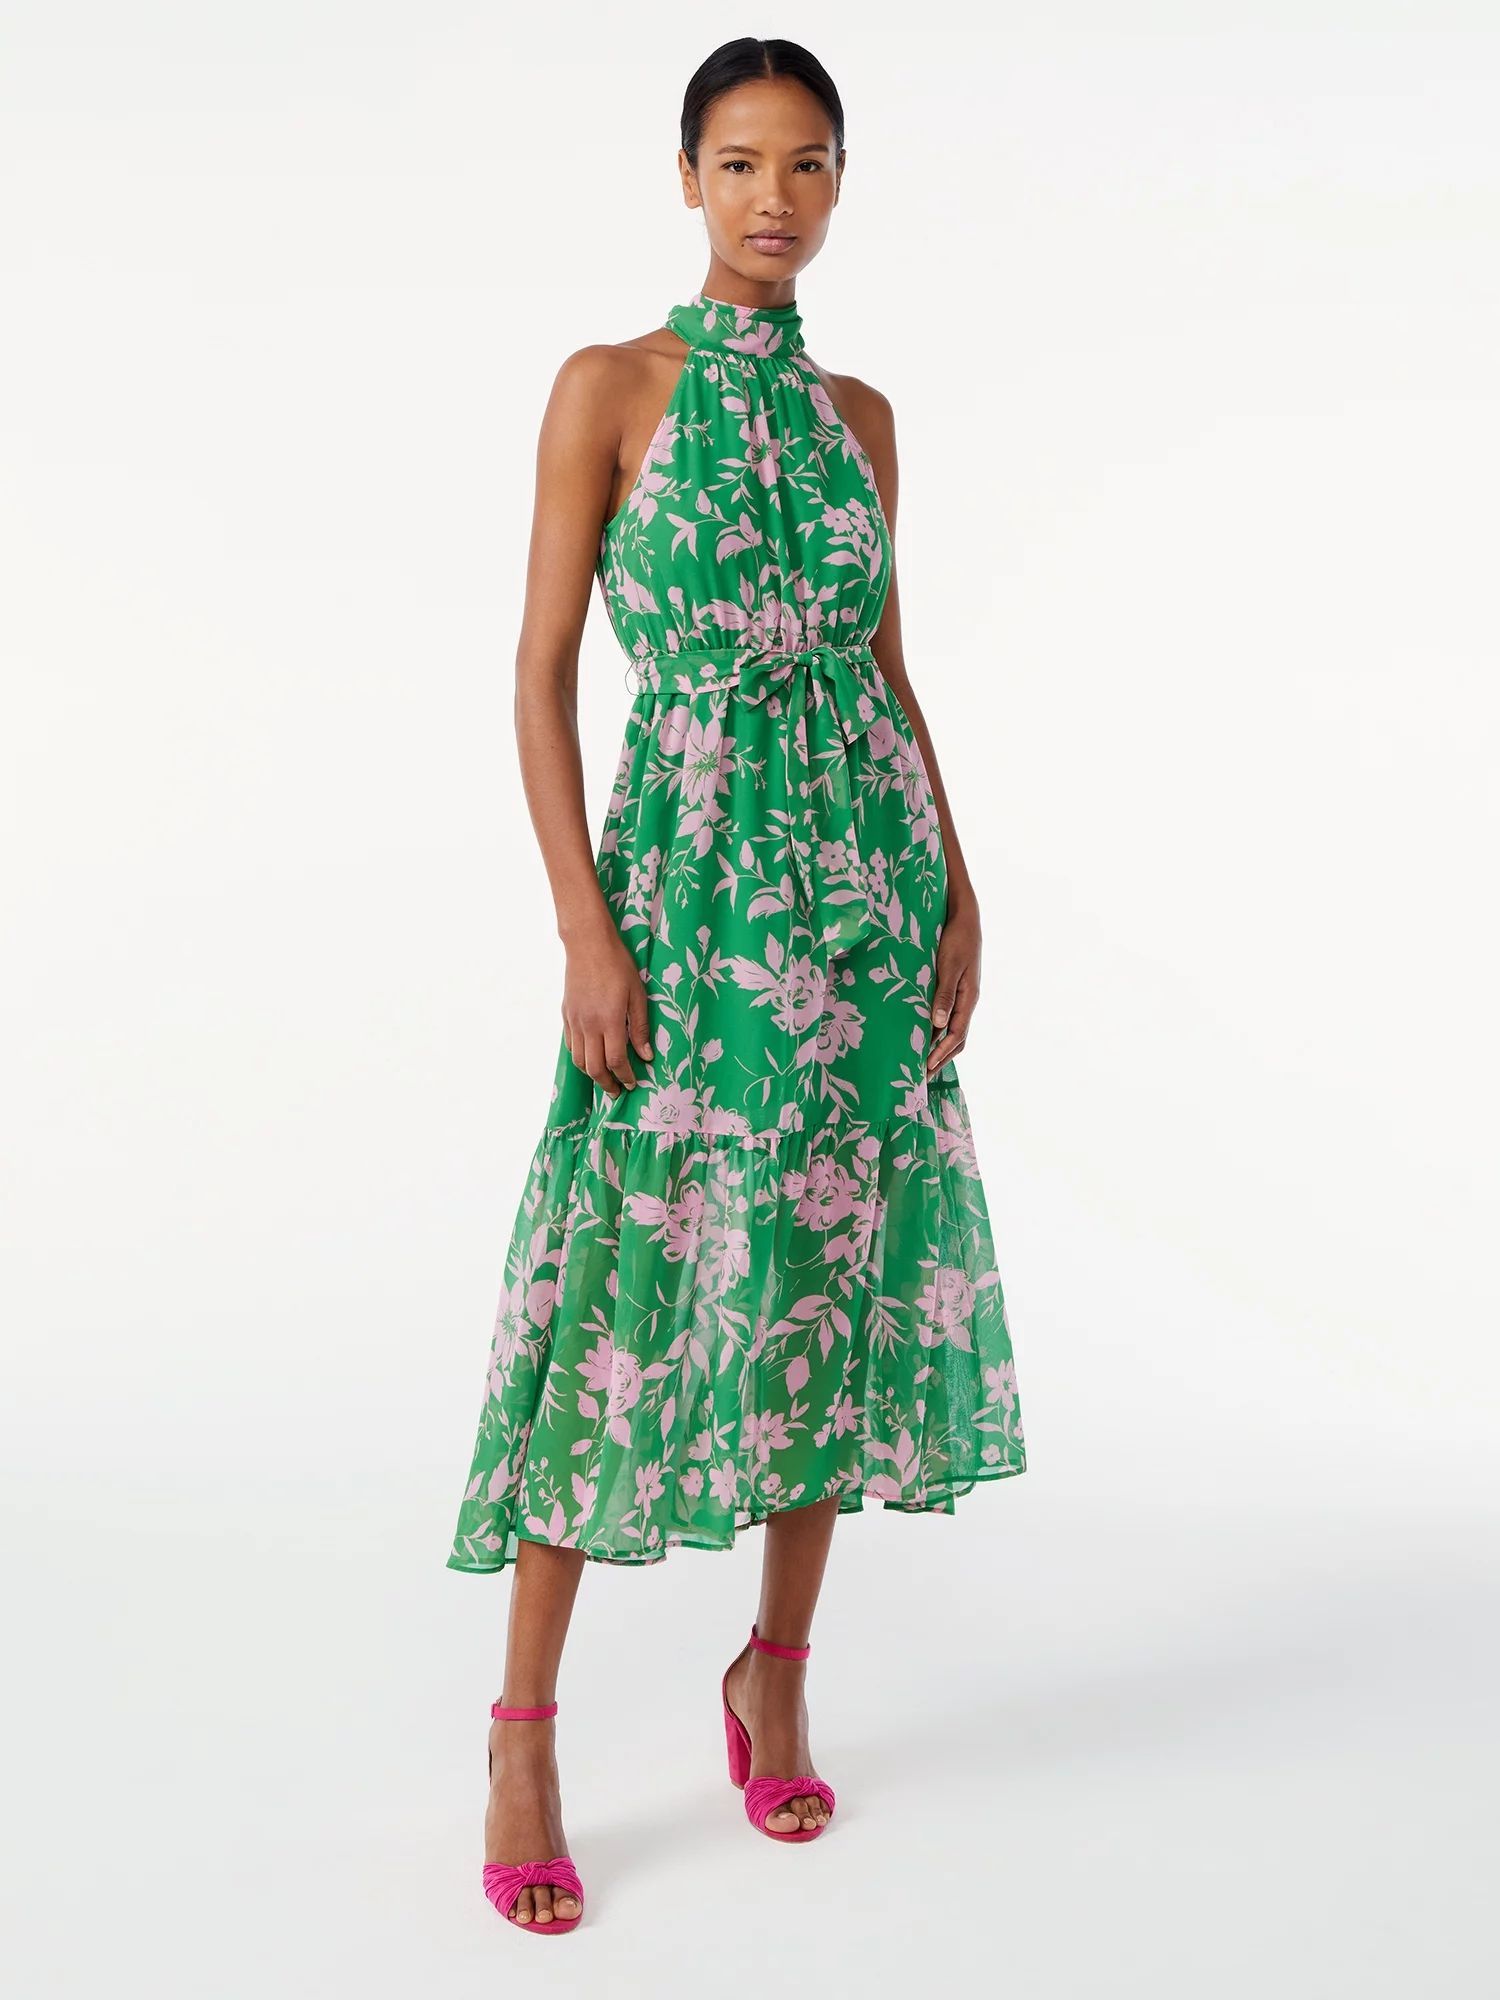 Scoop Women's Halter Top Midi Dress | Walmart (US)